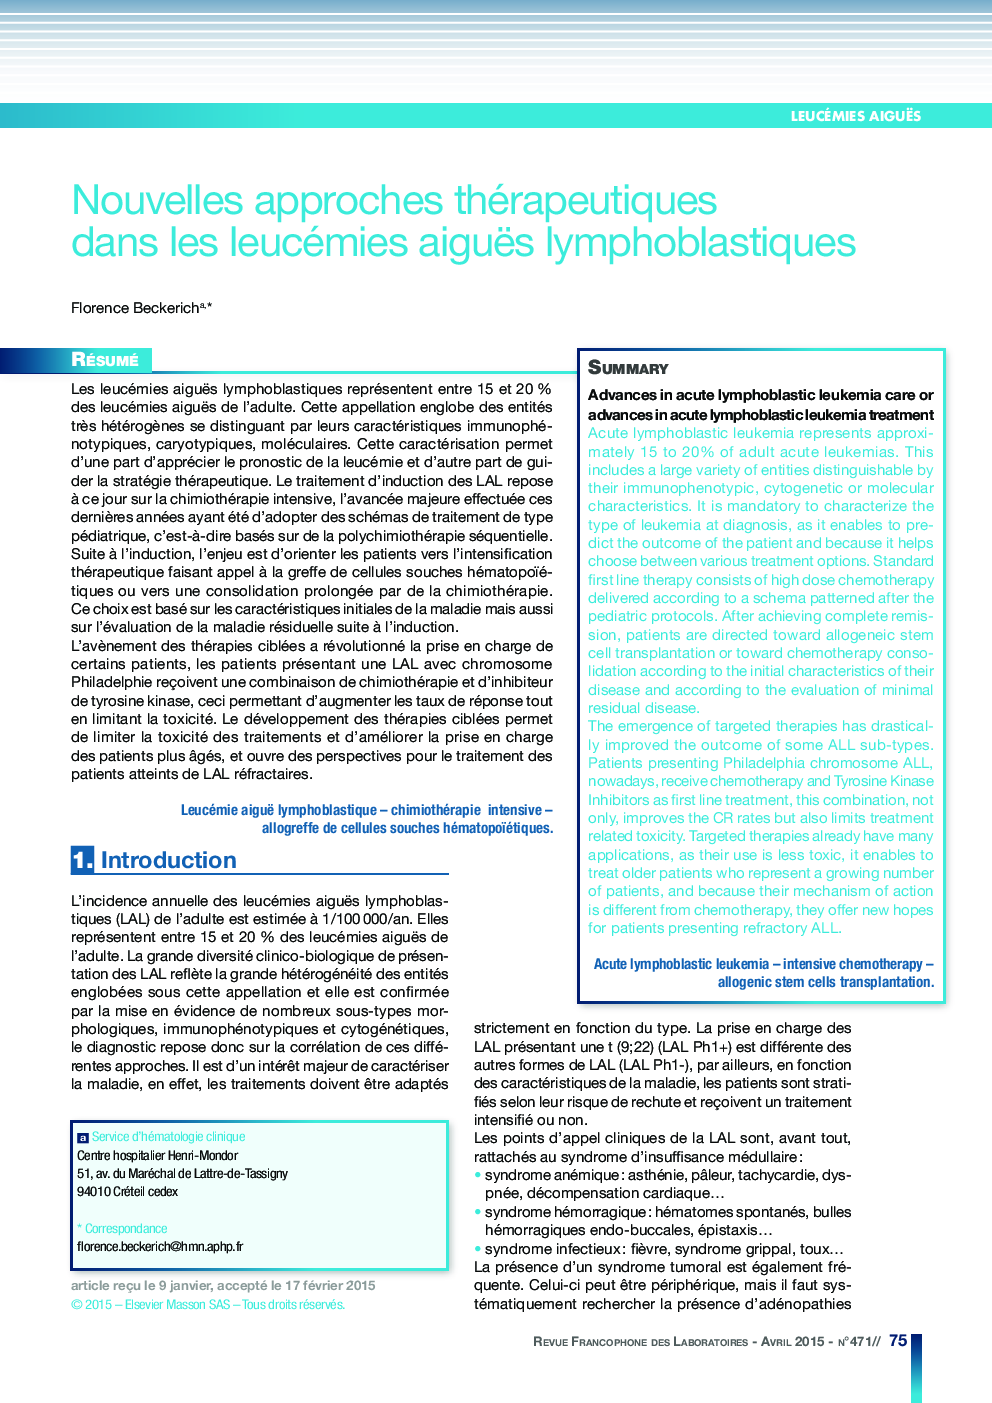 Nouvelles approches thérapeutiques dans les leucémies aiguës lymphoblastiques